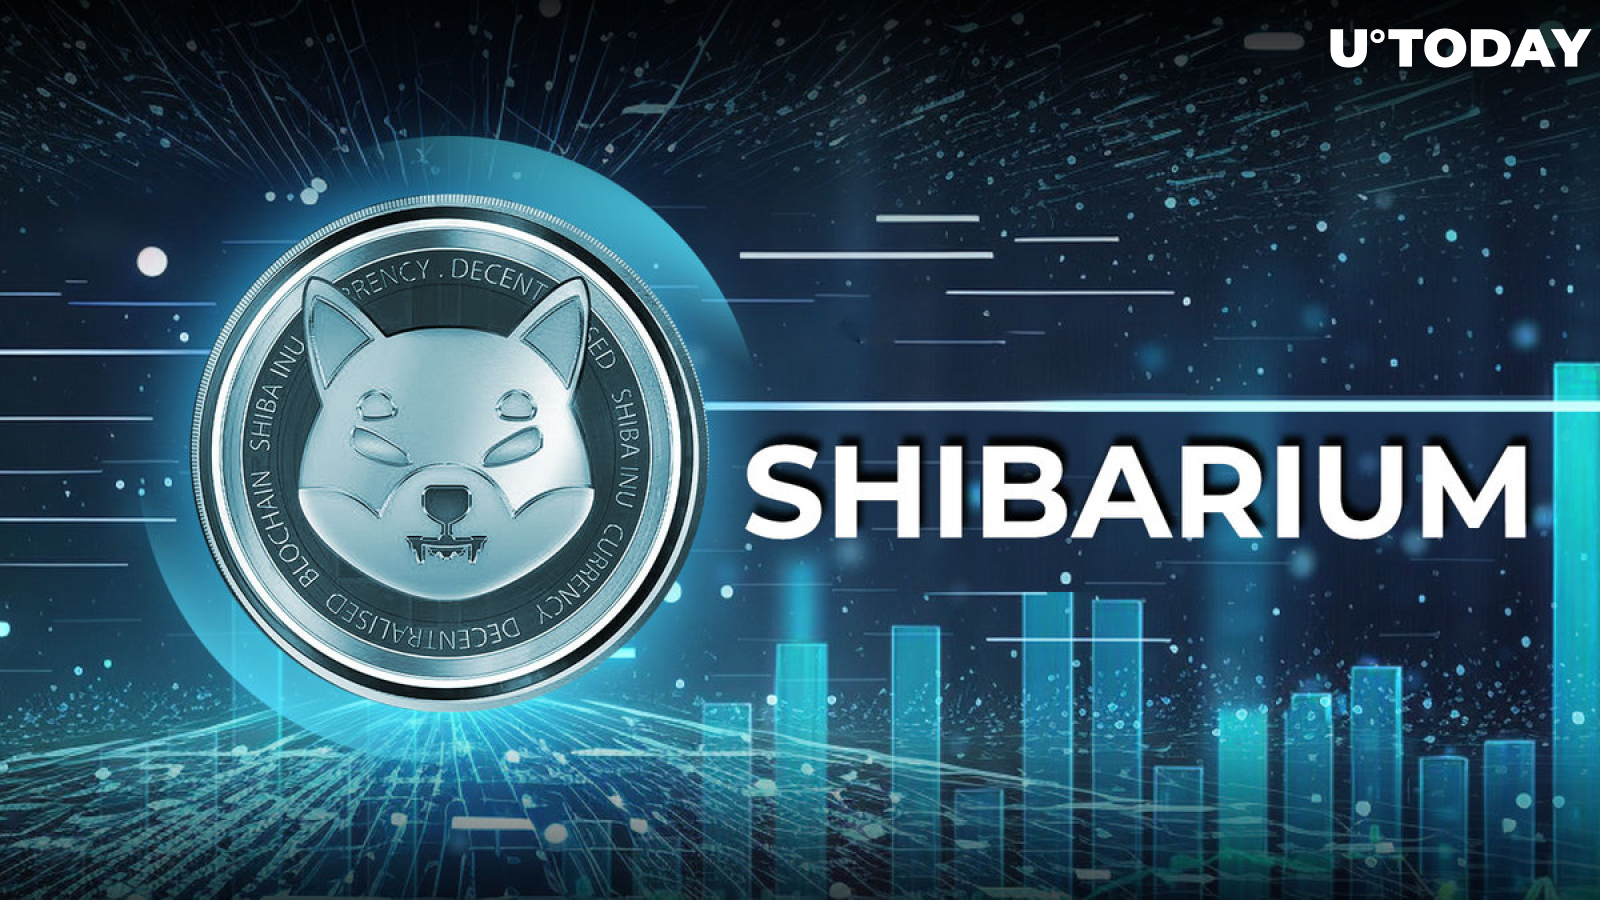 Shibarium Smashes Massive New Utility Milestones